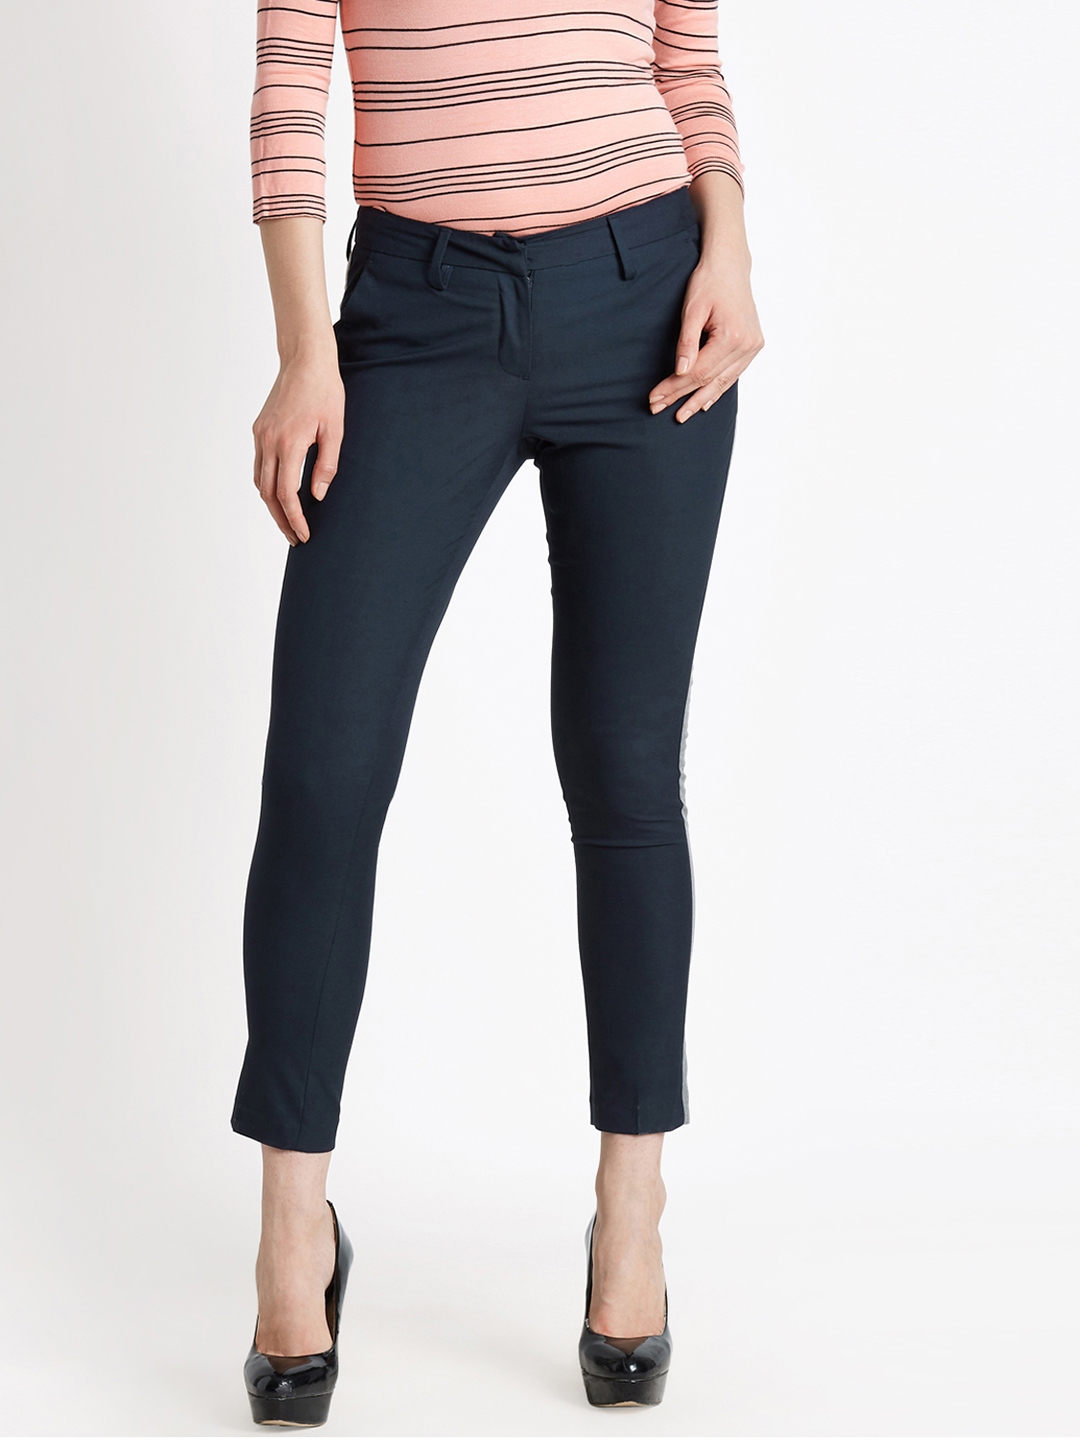 Comfort Stylish Stretchable womenLadiesGirls Cotton Lycra Trousers Pants  Colour Black Size  L XL 2XL